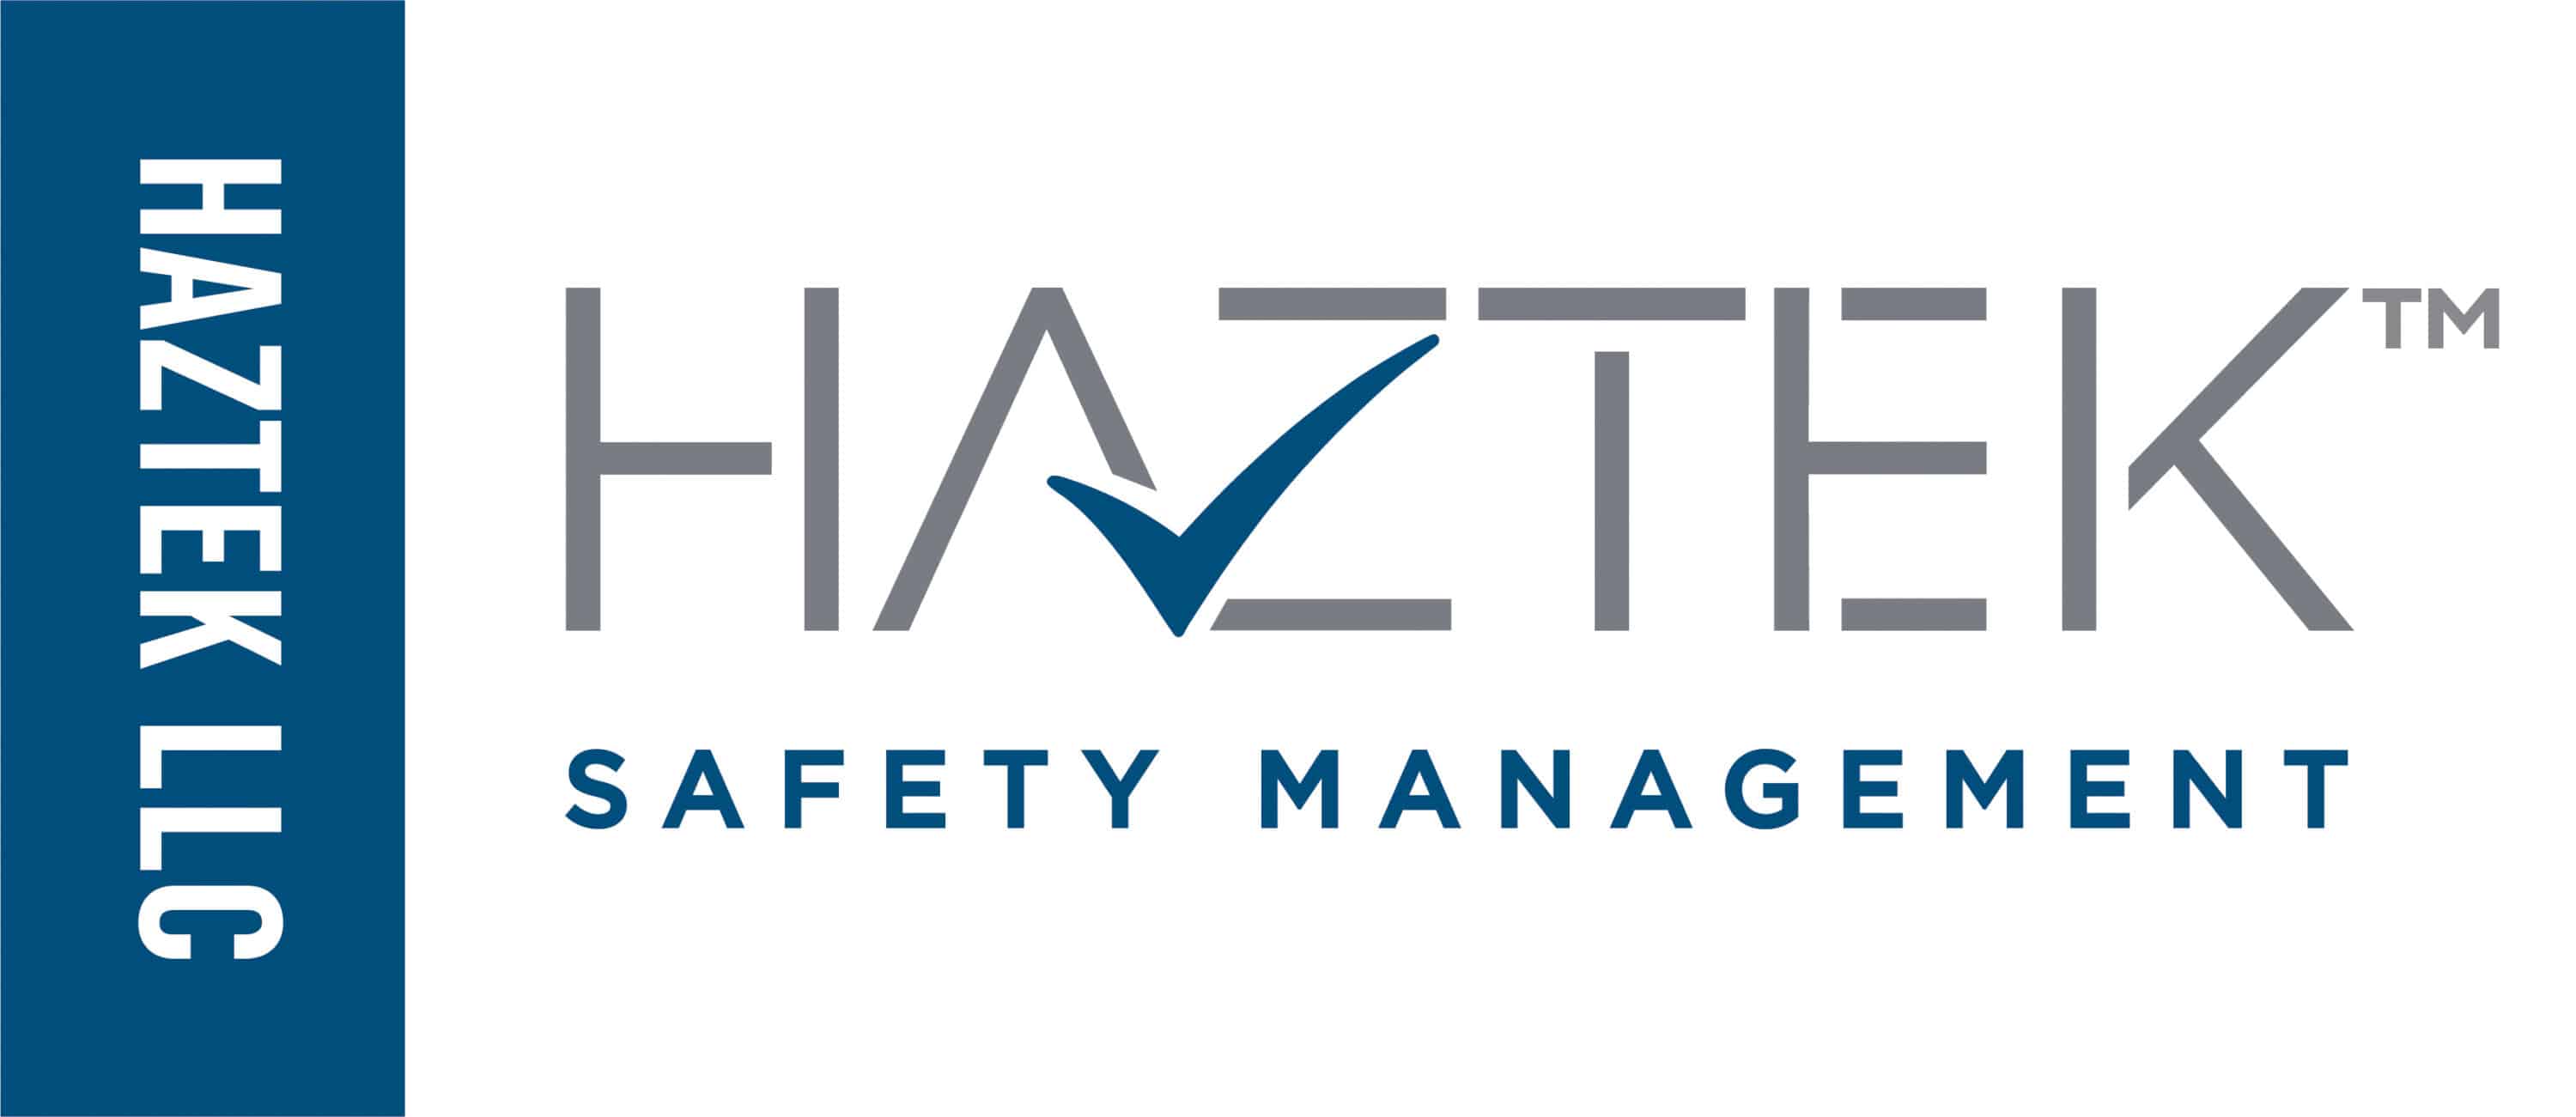 Haztek Inc. Construction Safety and Training